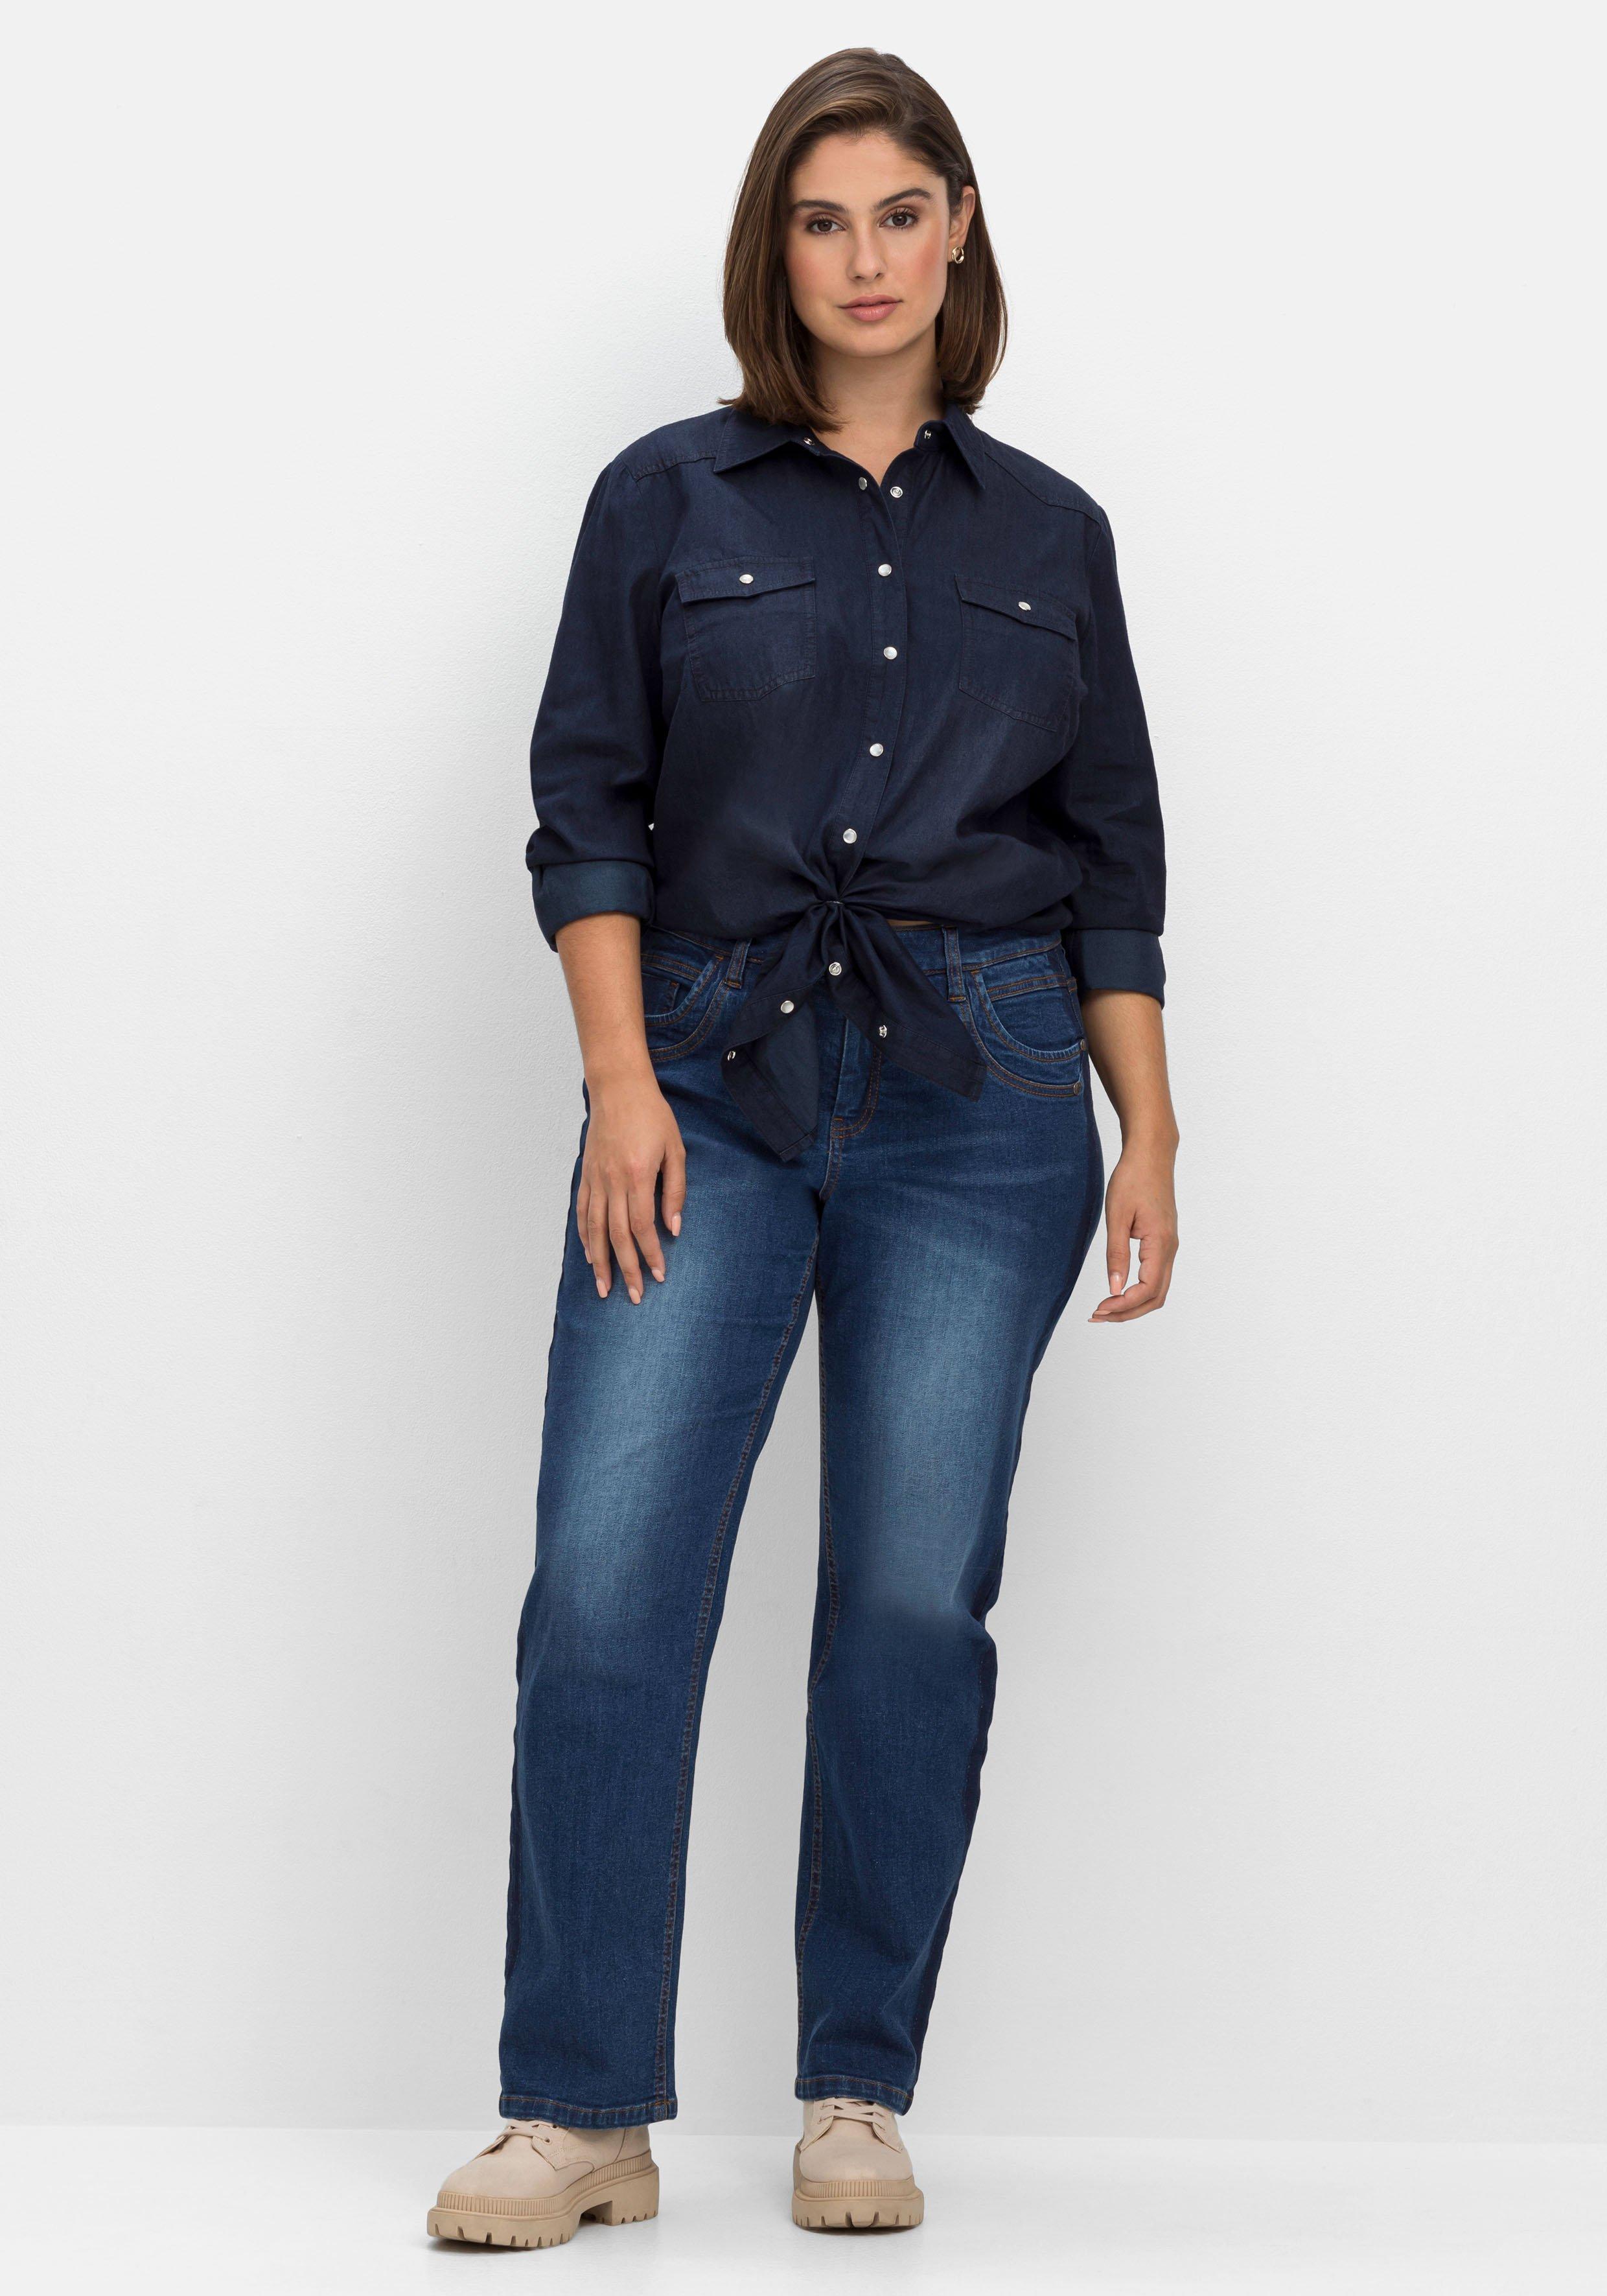 Jeansbluse mit Knopfleiste und | Denim sheego blue dark - Brusttaschen